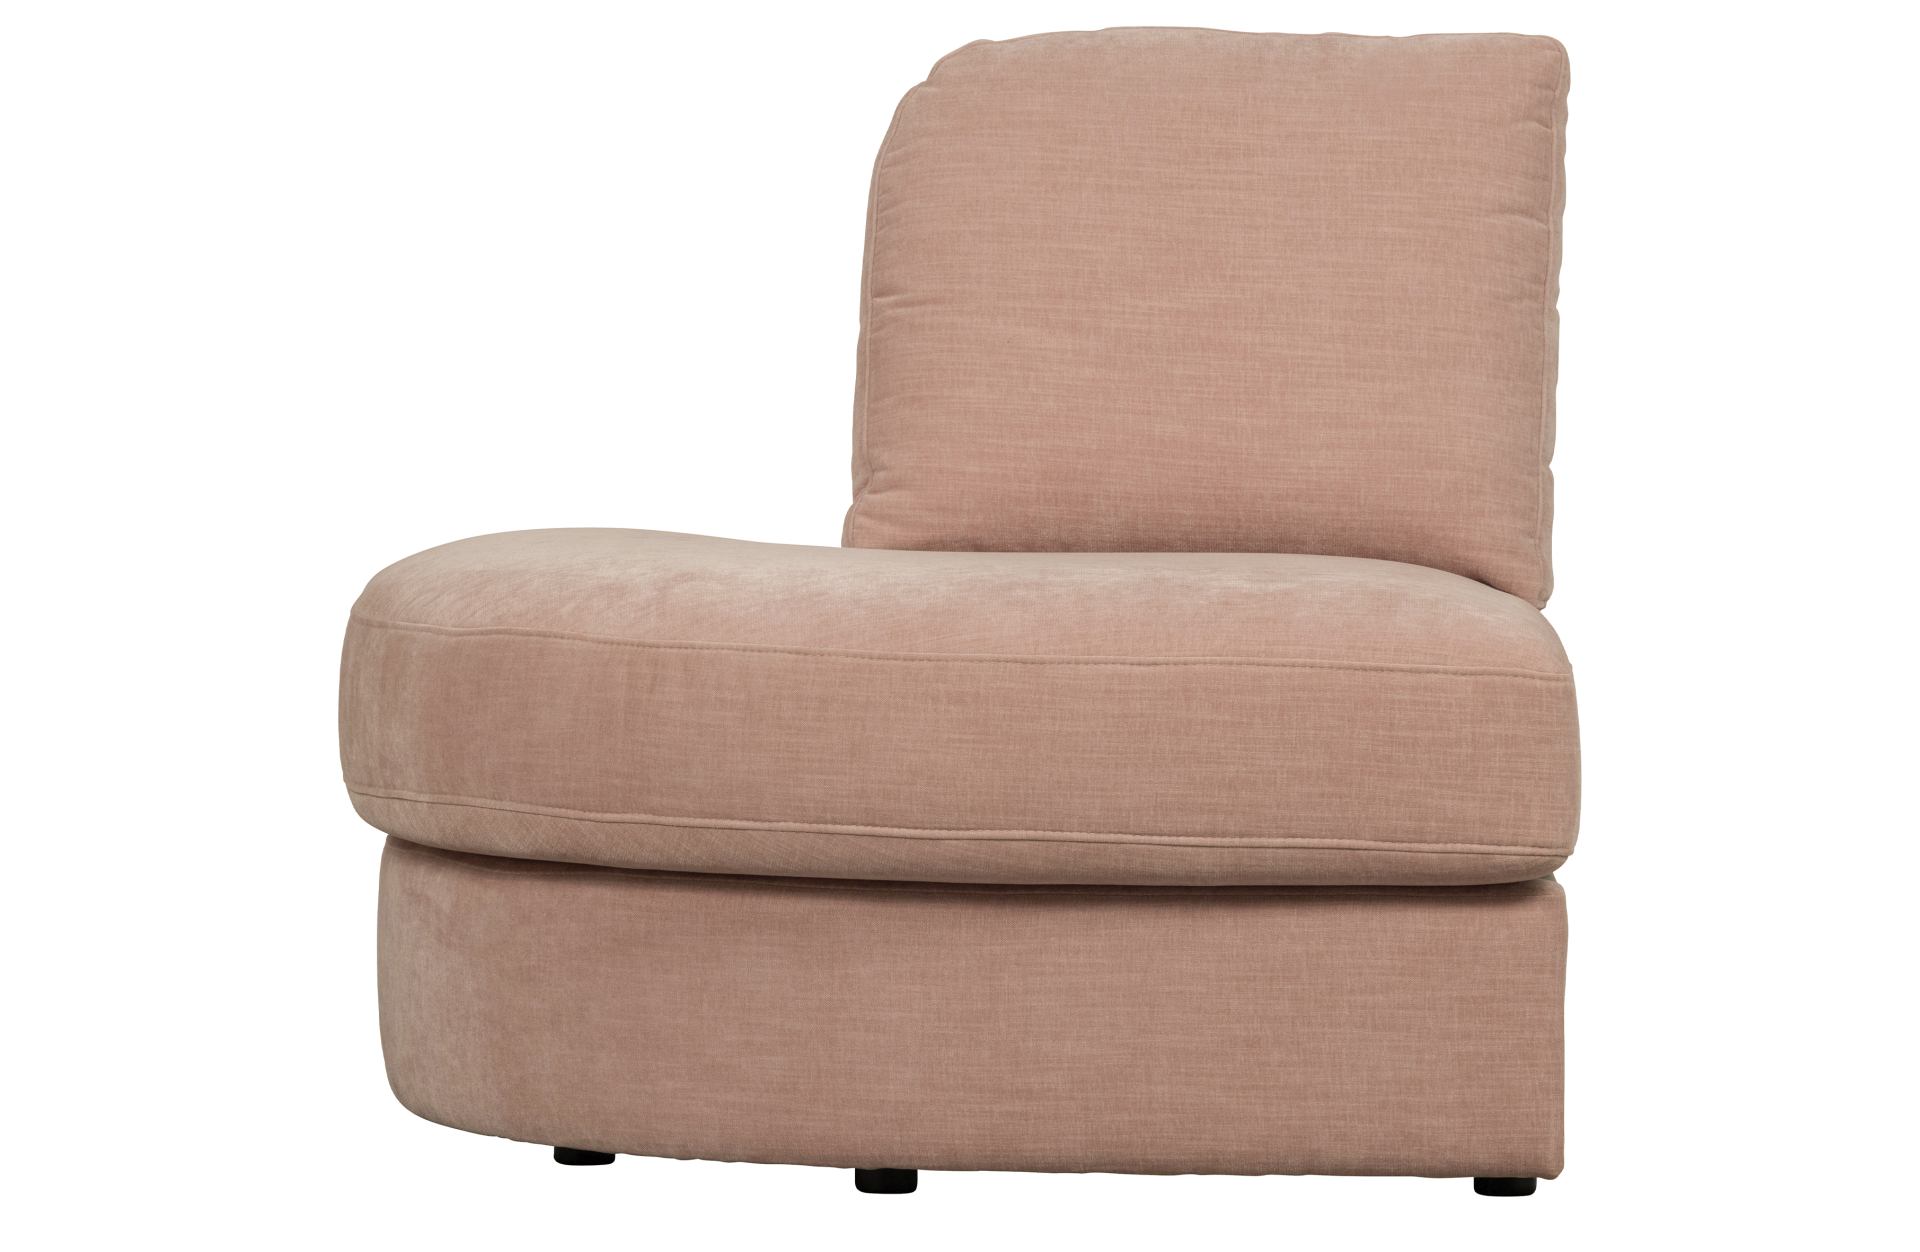 Das Modulsofa Family überzeugt mit seinem modernen Design. Das 1-Seat Eck Element mit der Ausführung Links wurde aus Gewebe-Stoff gefertigt, welcher einen einen rosa Farbton besitzen. Das Gestell ist aus Metall und hat eine schwarze Farbe. Das Element hat